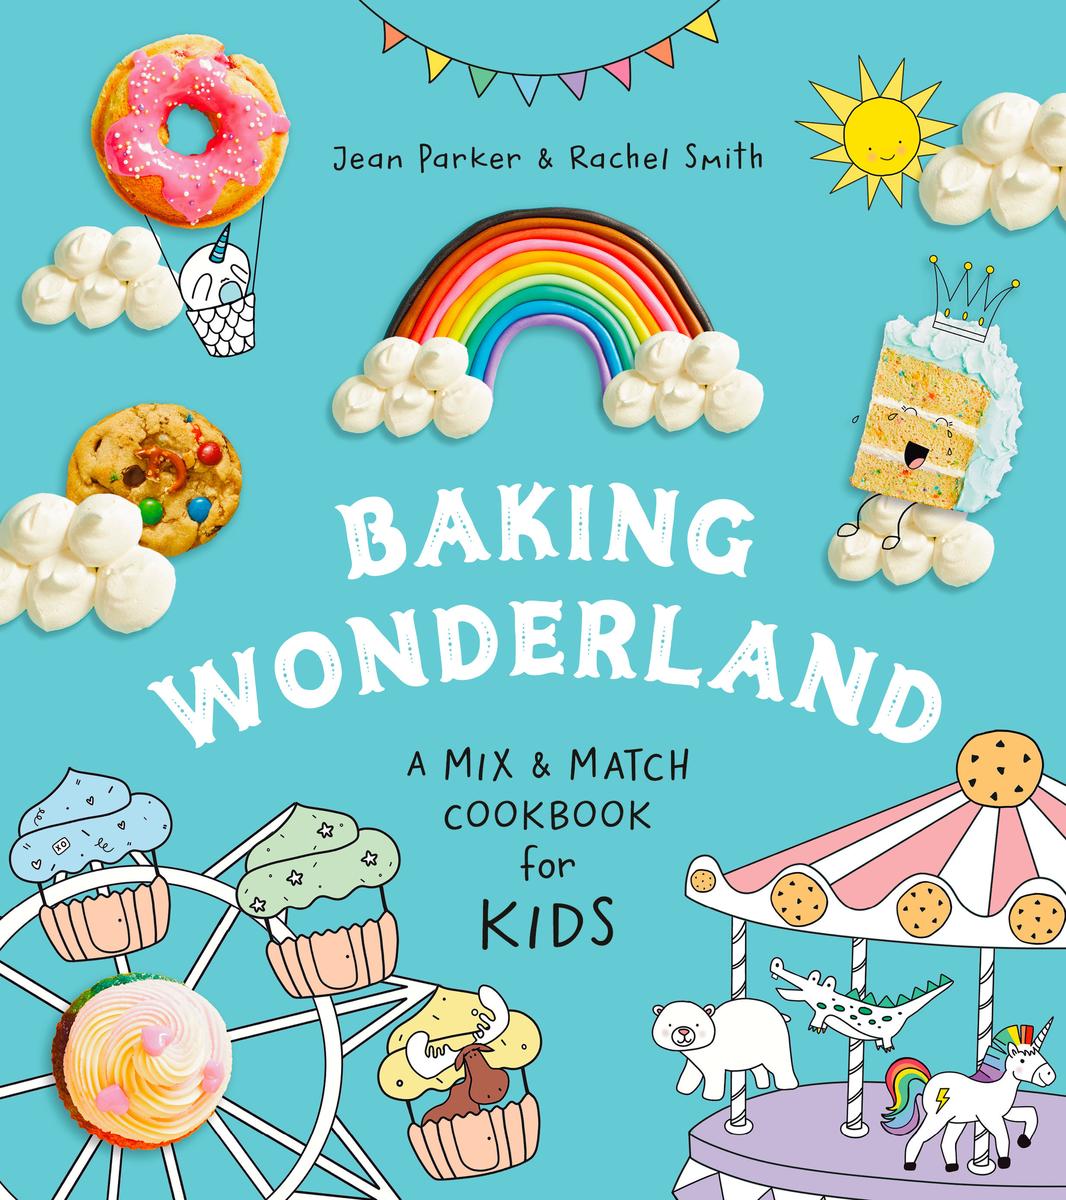 Baking Wonderland - A Mix & Match Cookbook for Kids!